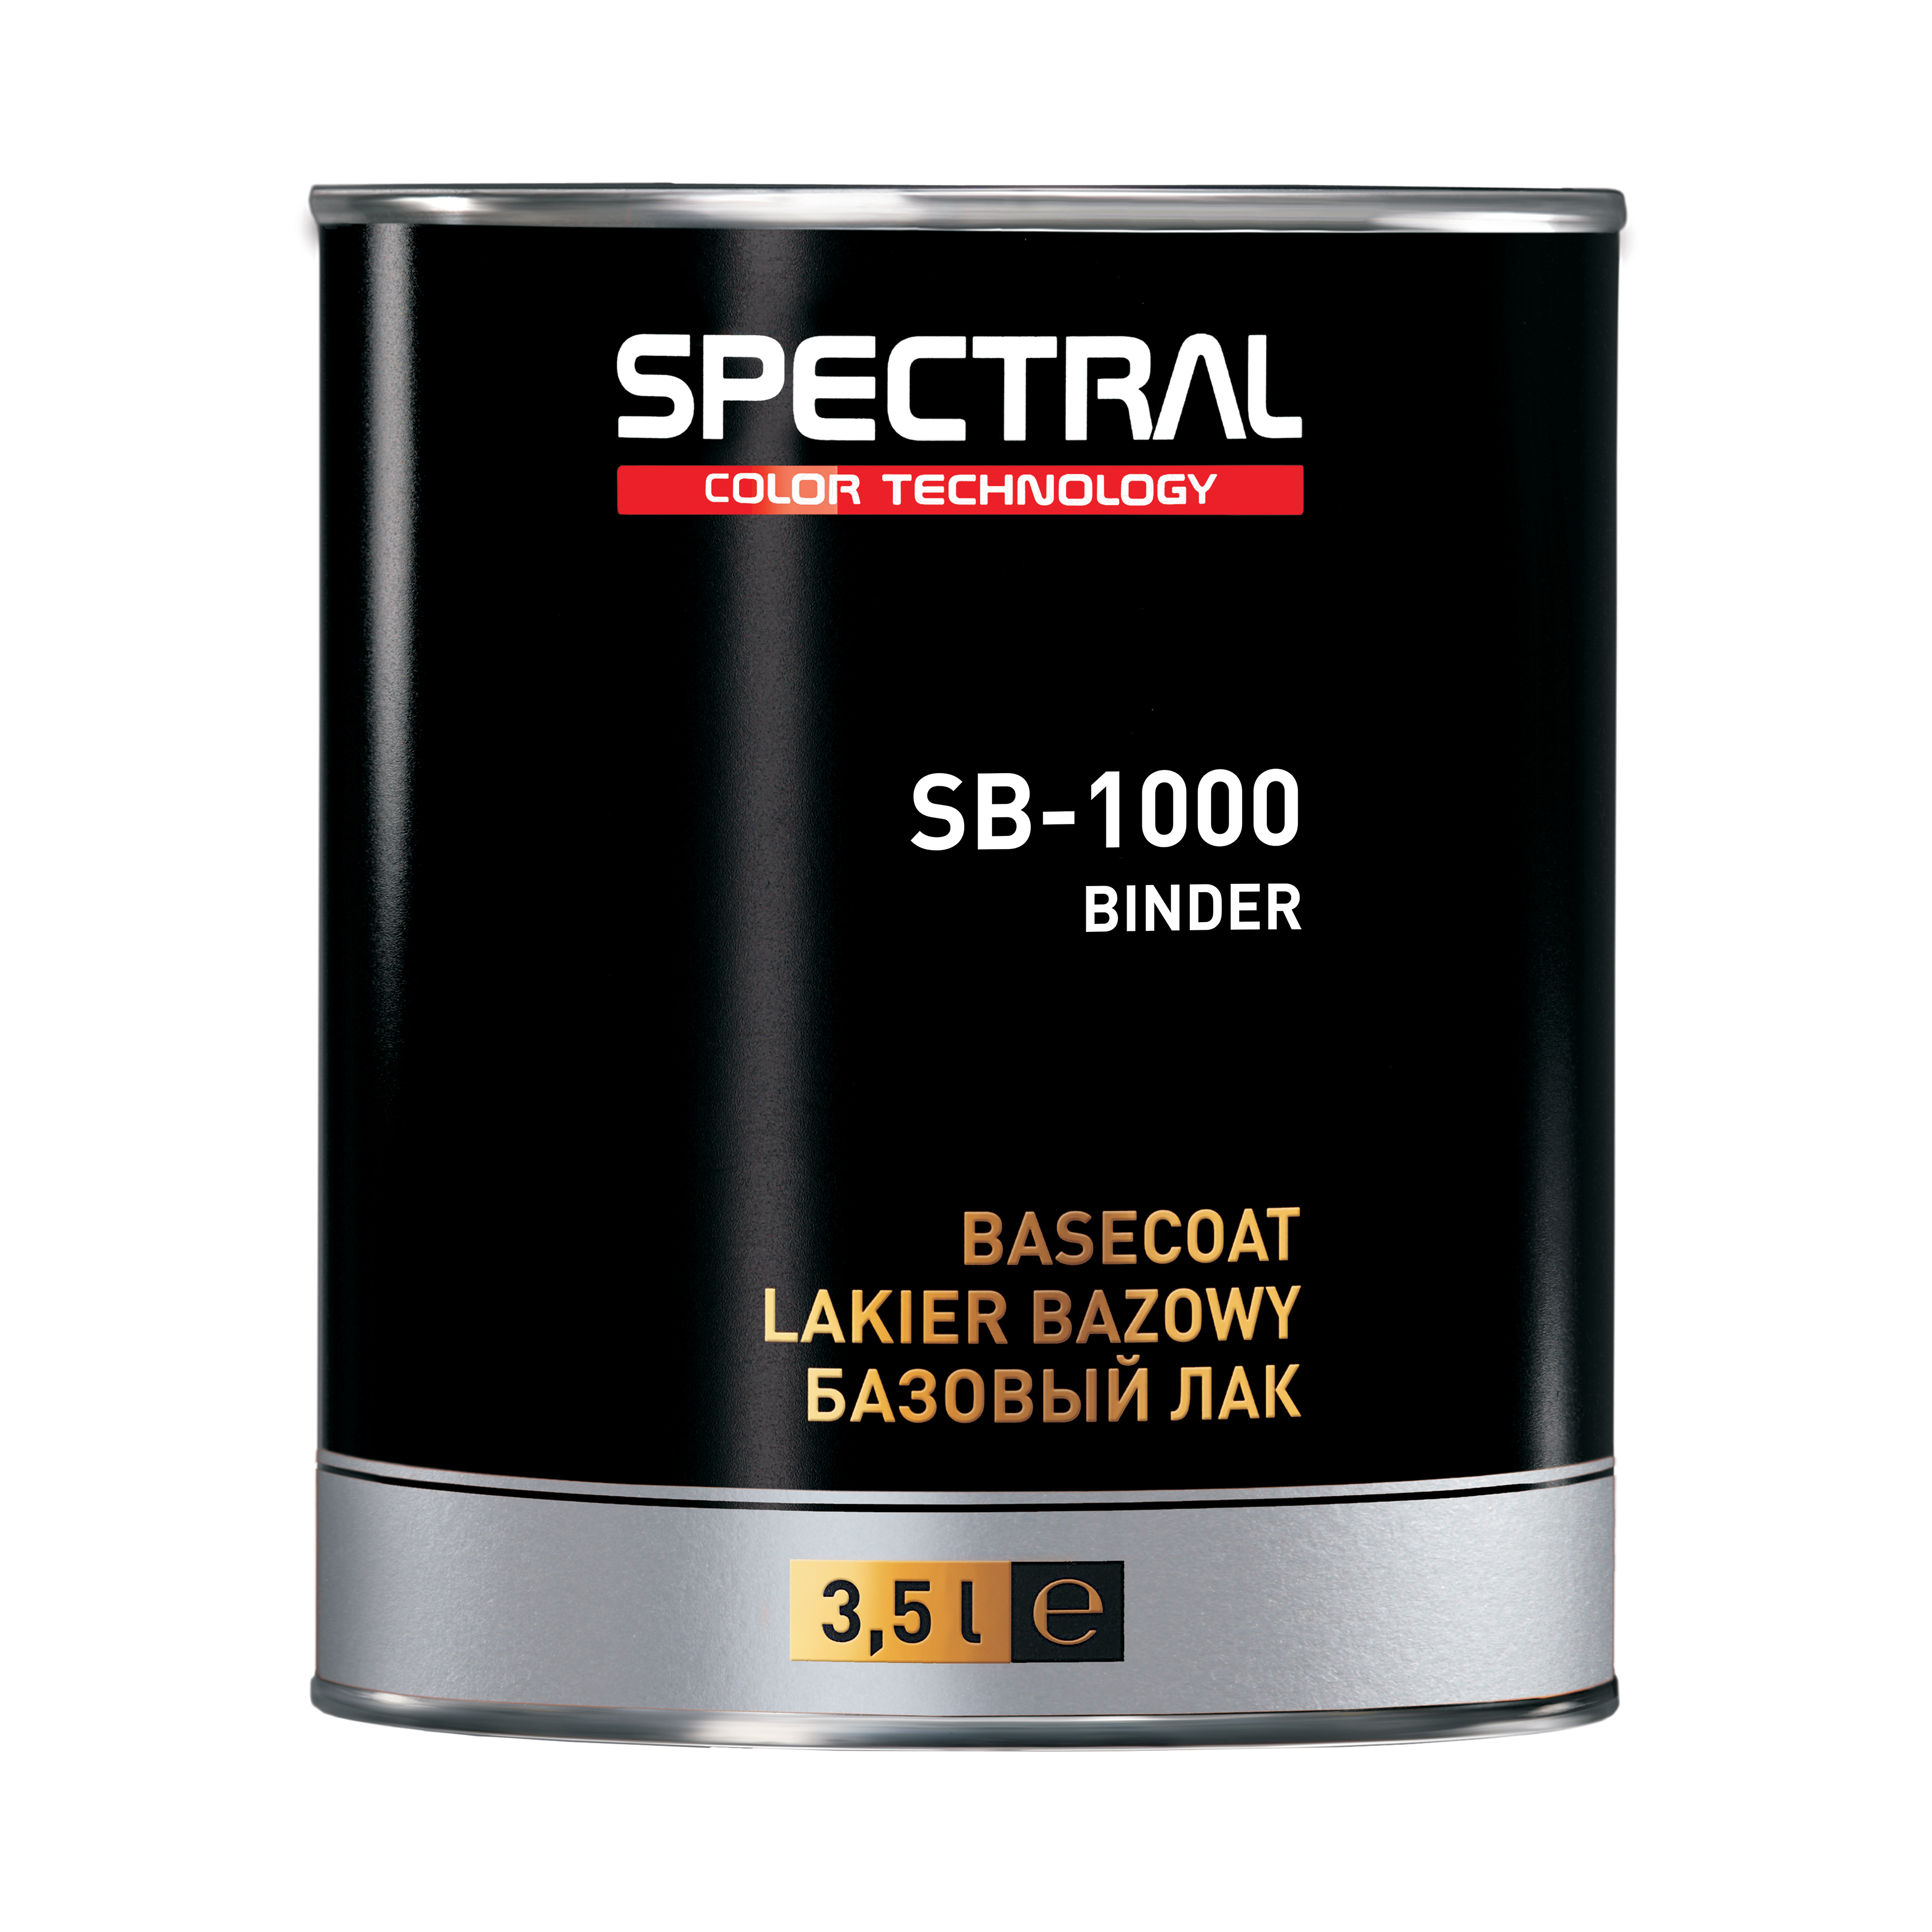 Spectral Base